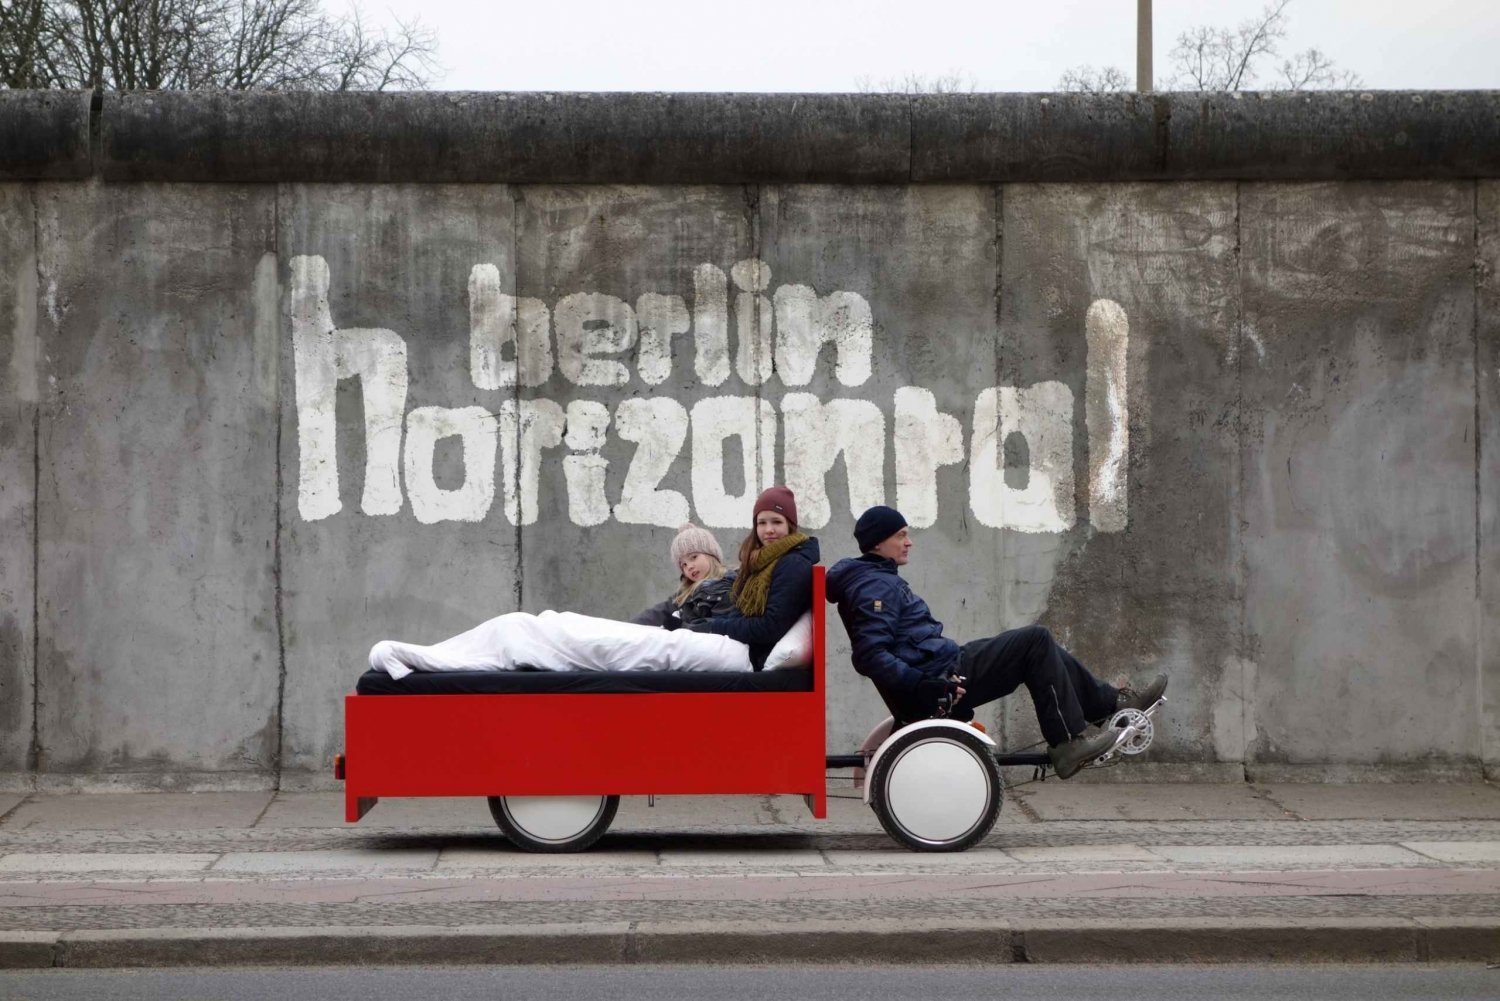 Berlino: giro turistico della città in una BedBike unica